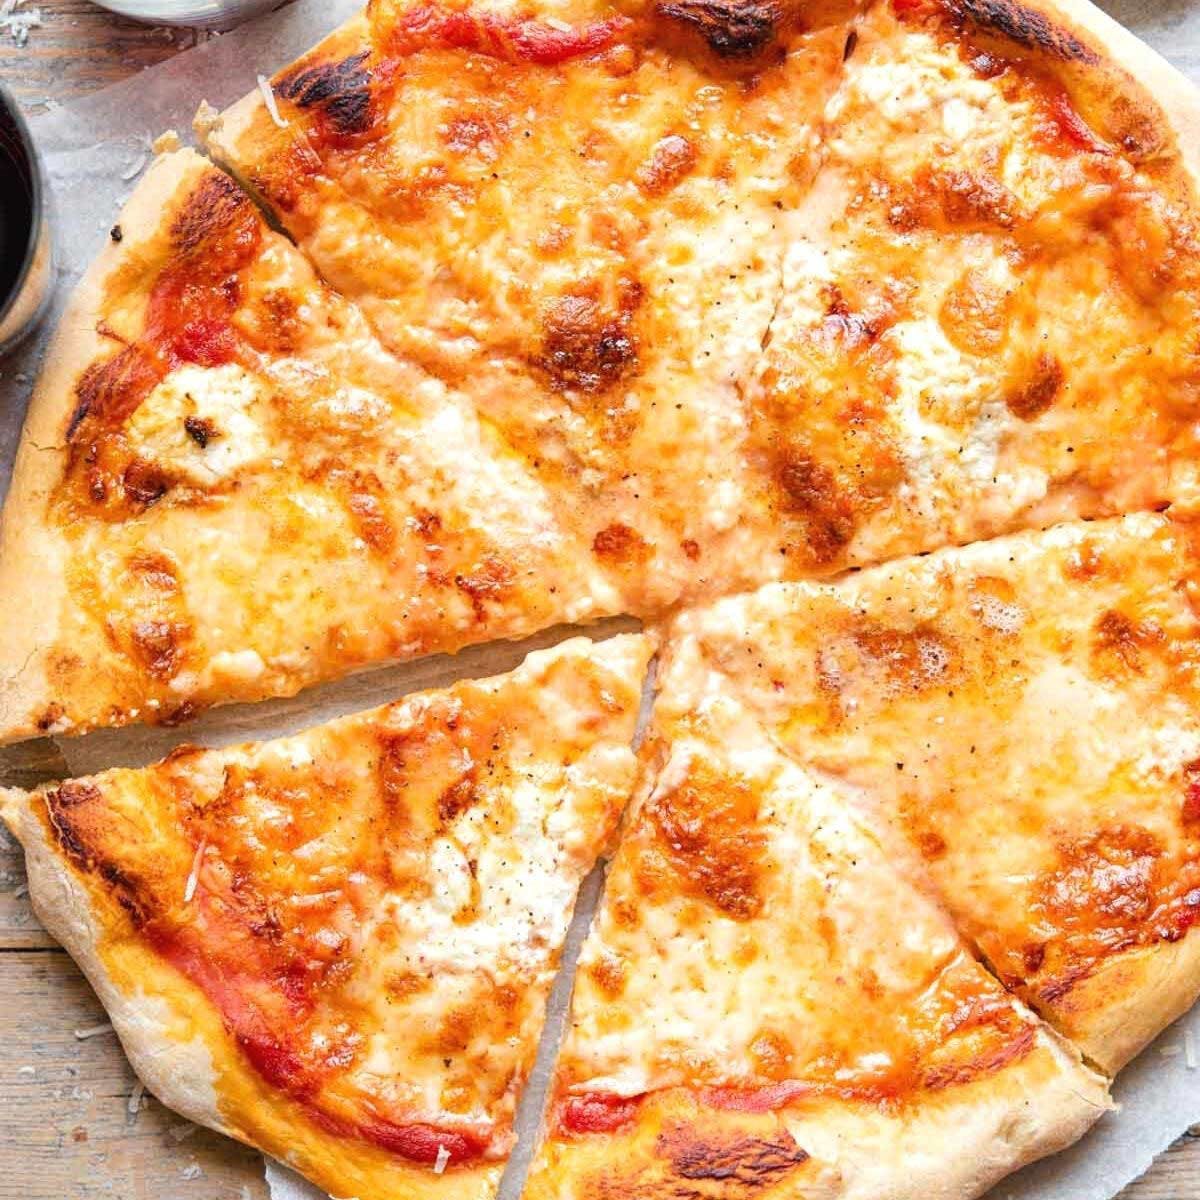 Marco Polo Pizza & Italian Restaurant hero